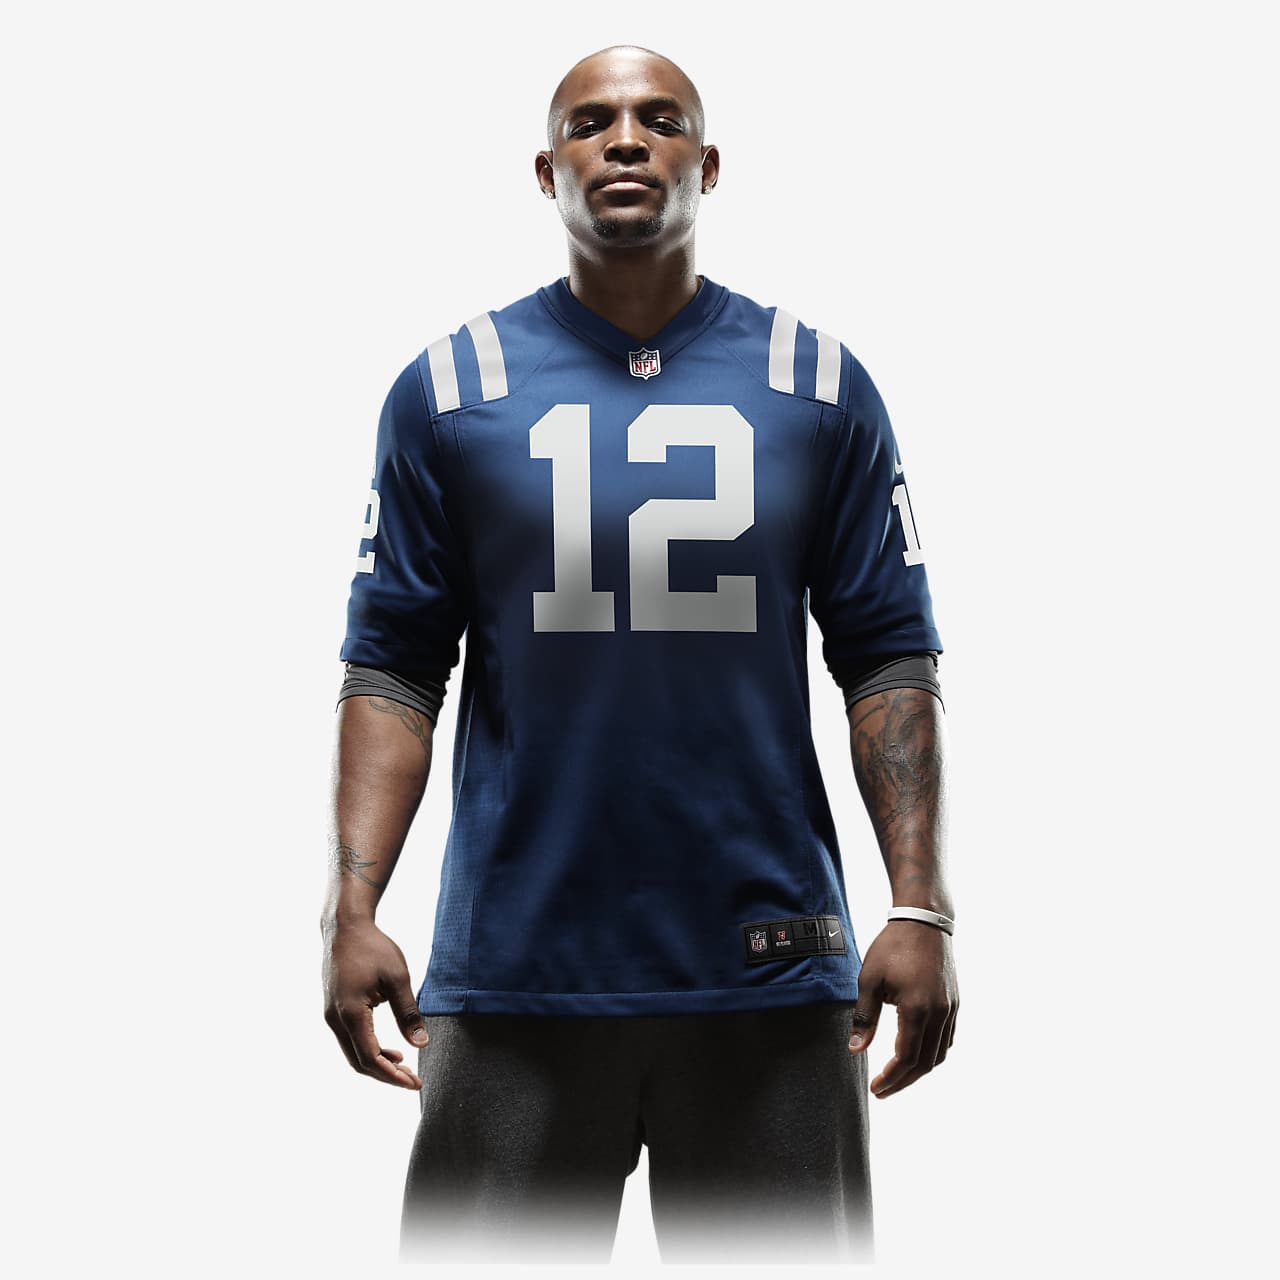 Reducción fresa Transeúnte Camiseta de fútbol americano para hombre NFL Indianapolis Colts (Andrew Luck).  Nike.com